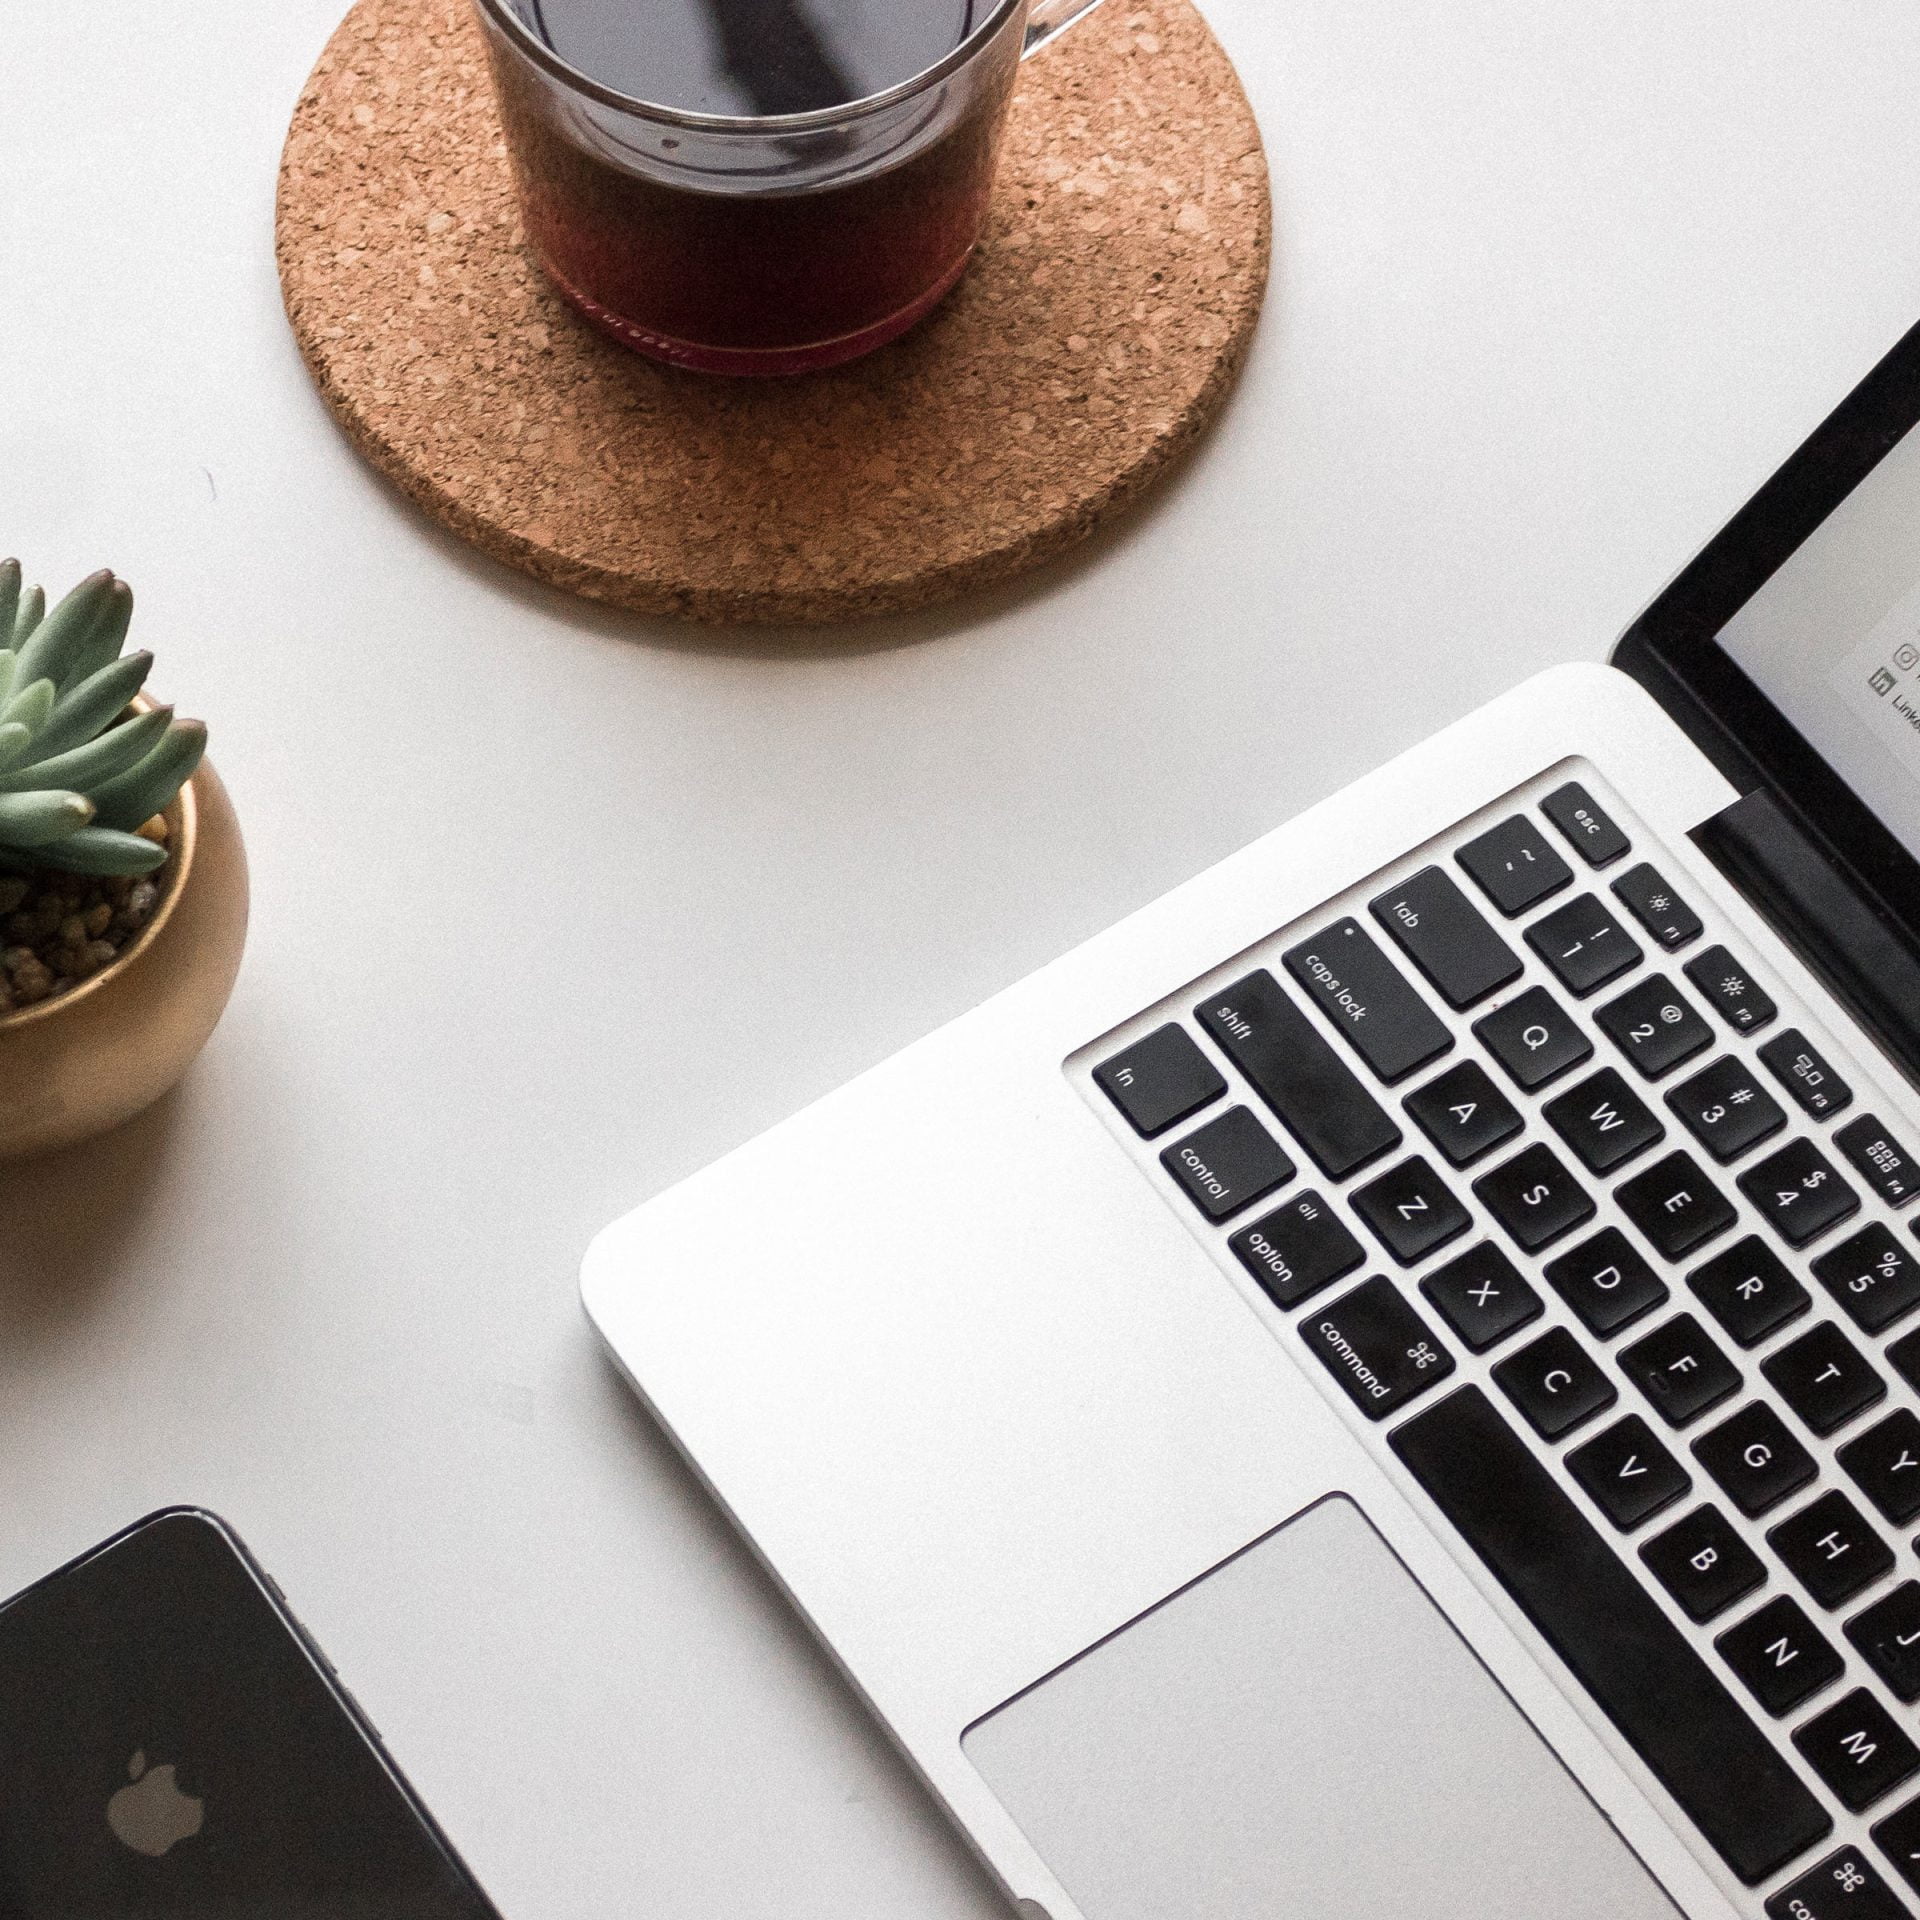 Basis cursus WordPress: laptop met kop koffie, vetplant en telefoon